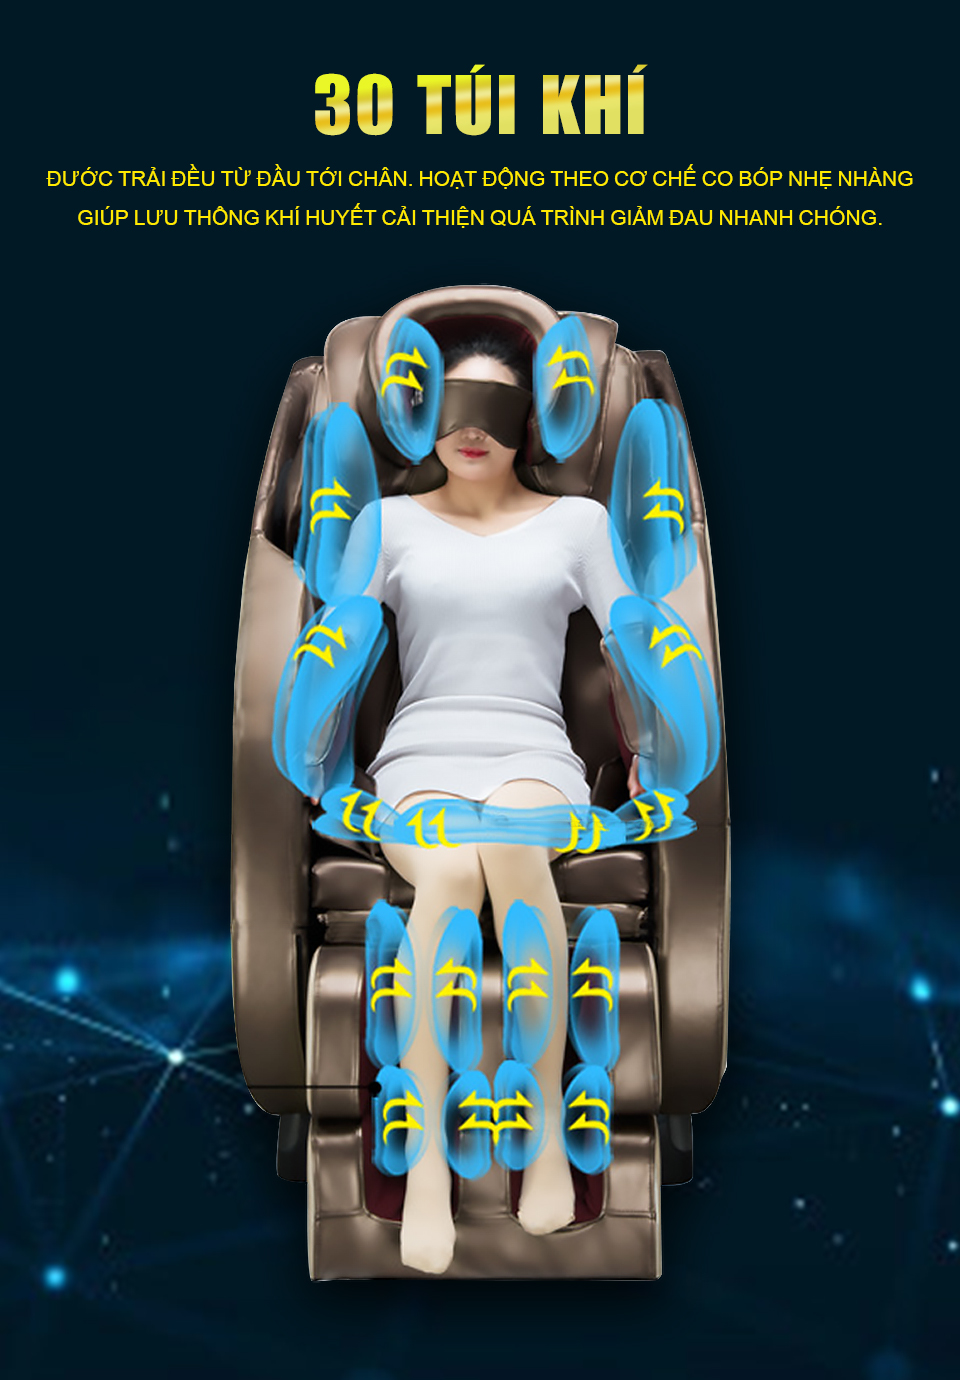 Hệ thông túi khí ghế massage cao cấp sẽ cải thiện việc giảm bớt mọi cảm giác đau nhức trên cơ thể người dùng